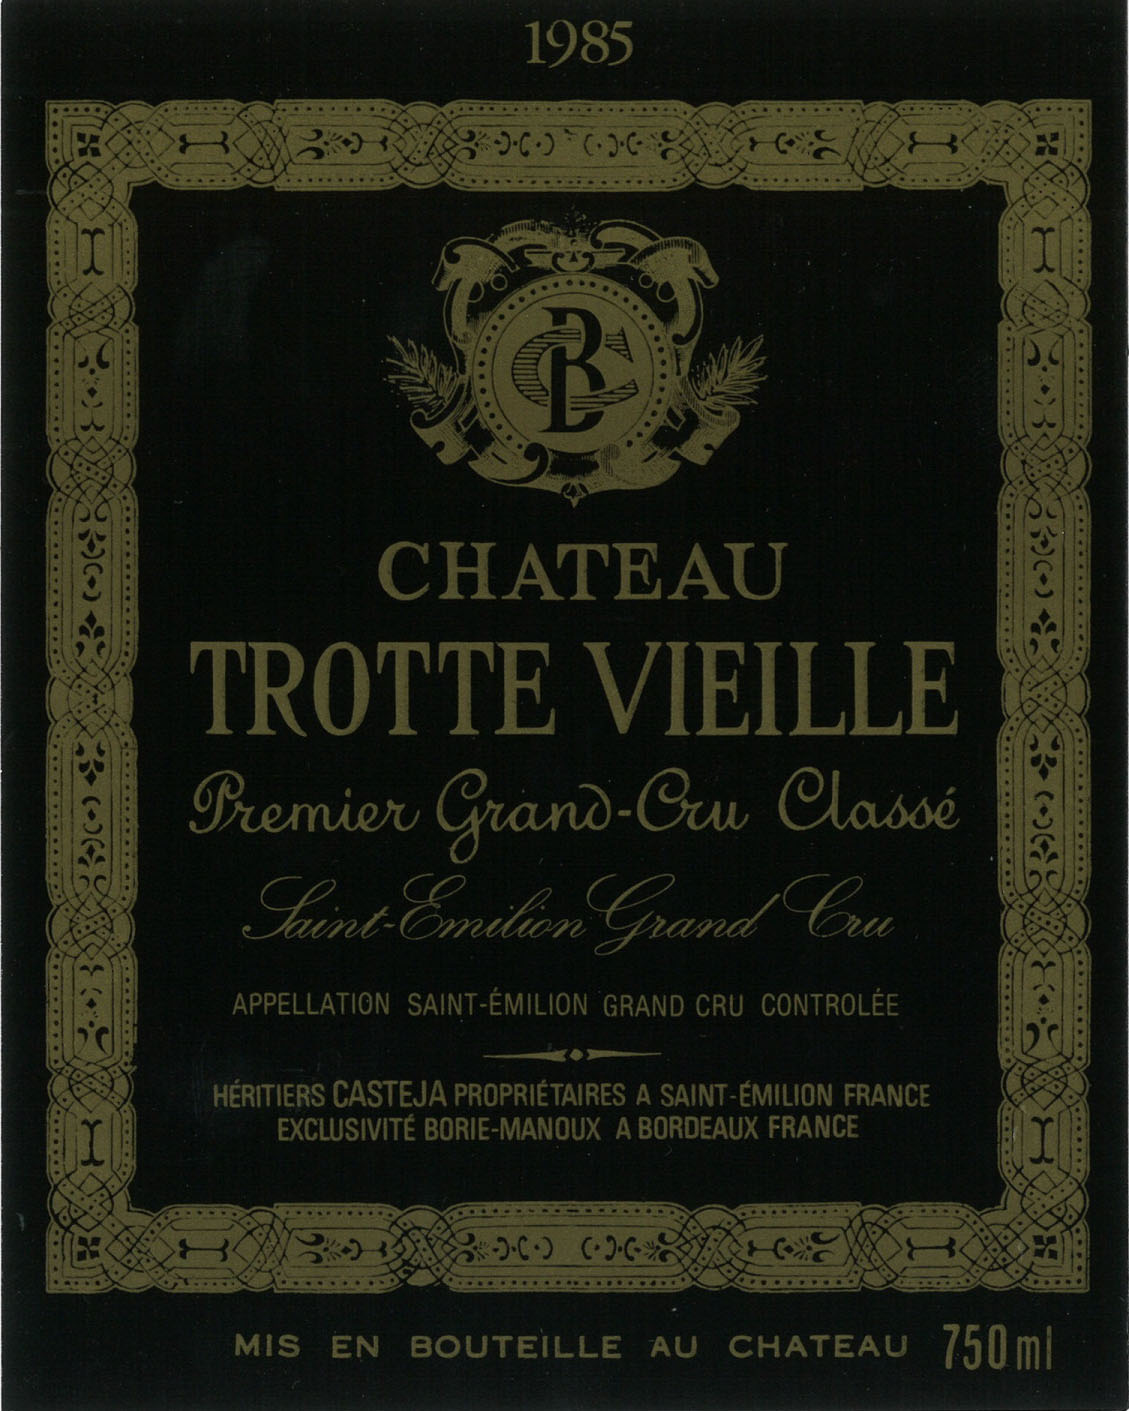 Chateau Trotte Vieille label